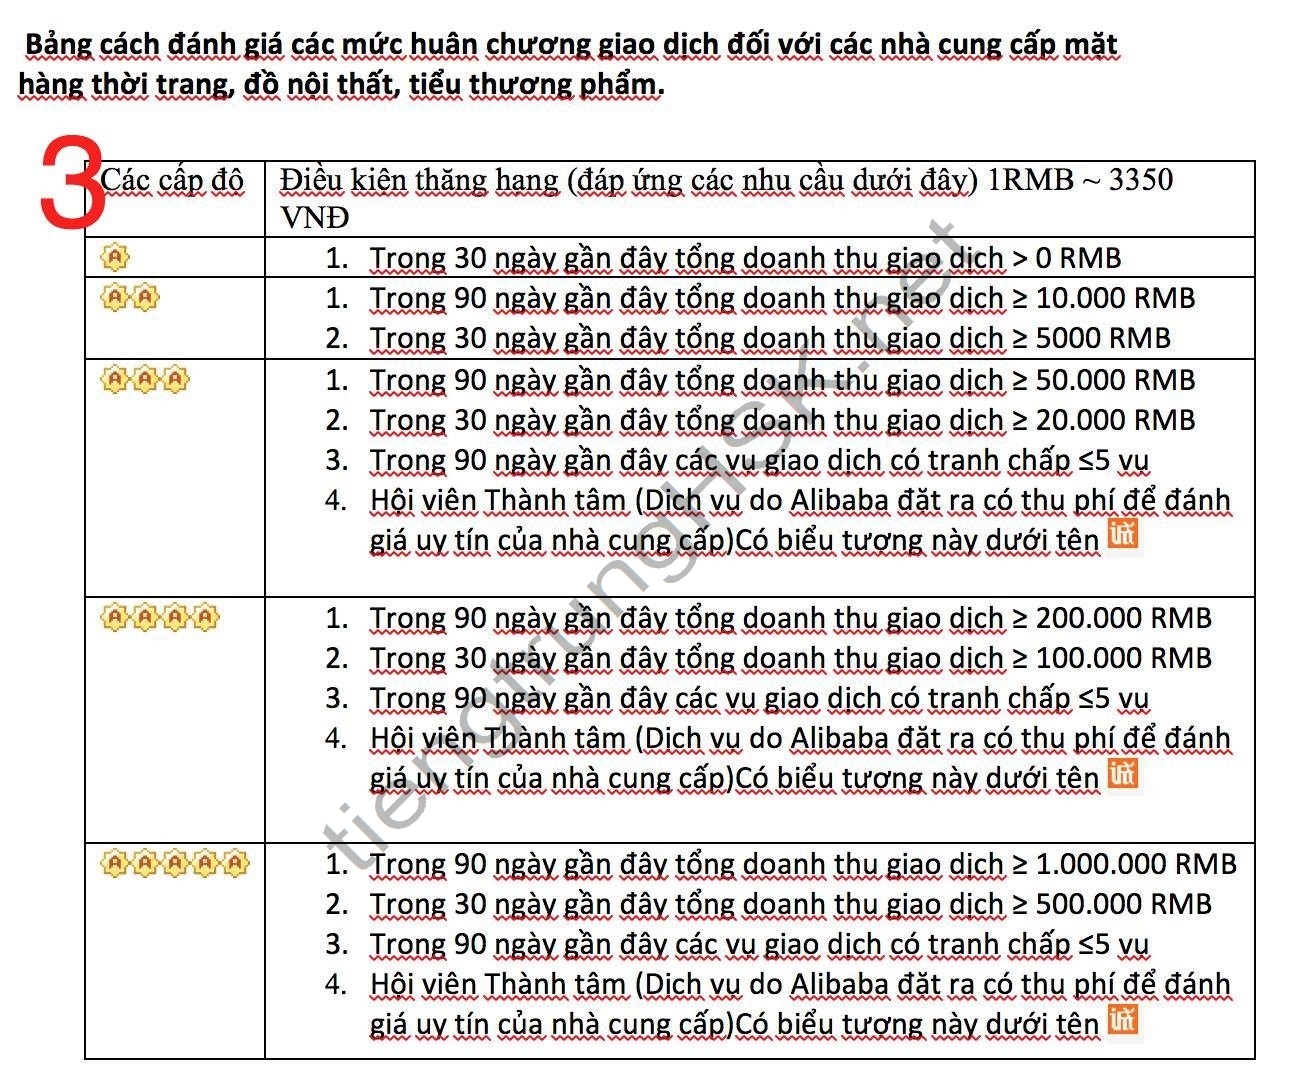 tiêu chuẩn đánh giá độ uy tín shop taobao tmall 1688 chi tiết nhất - 7 Tiêu chí đánh giá độ Uy tín SHOP TAOBAO TMALL 1688